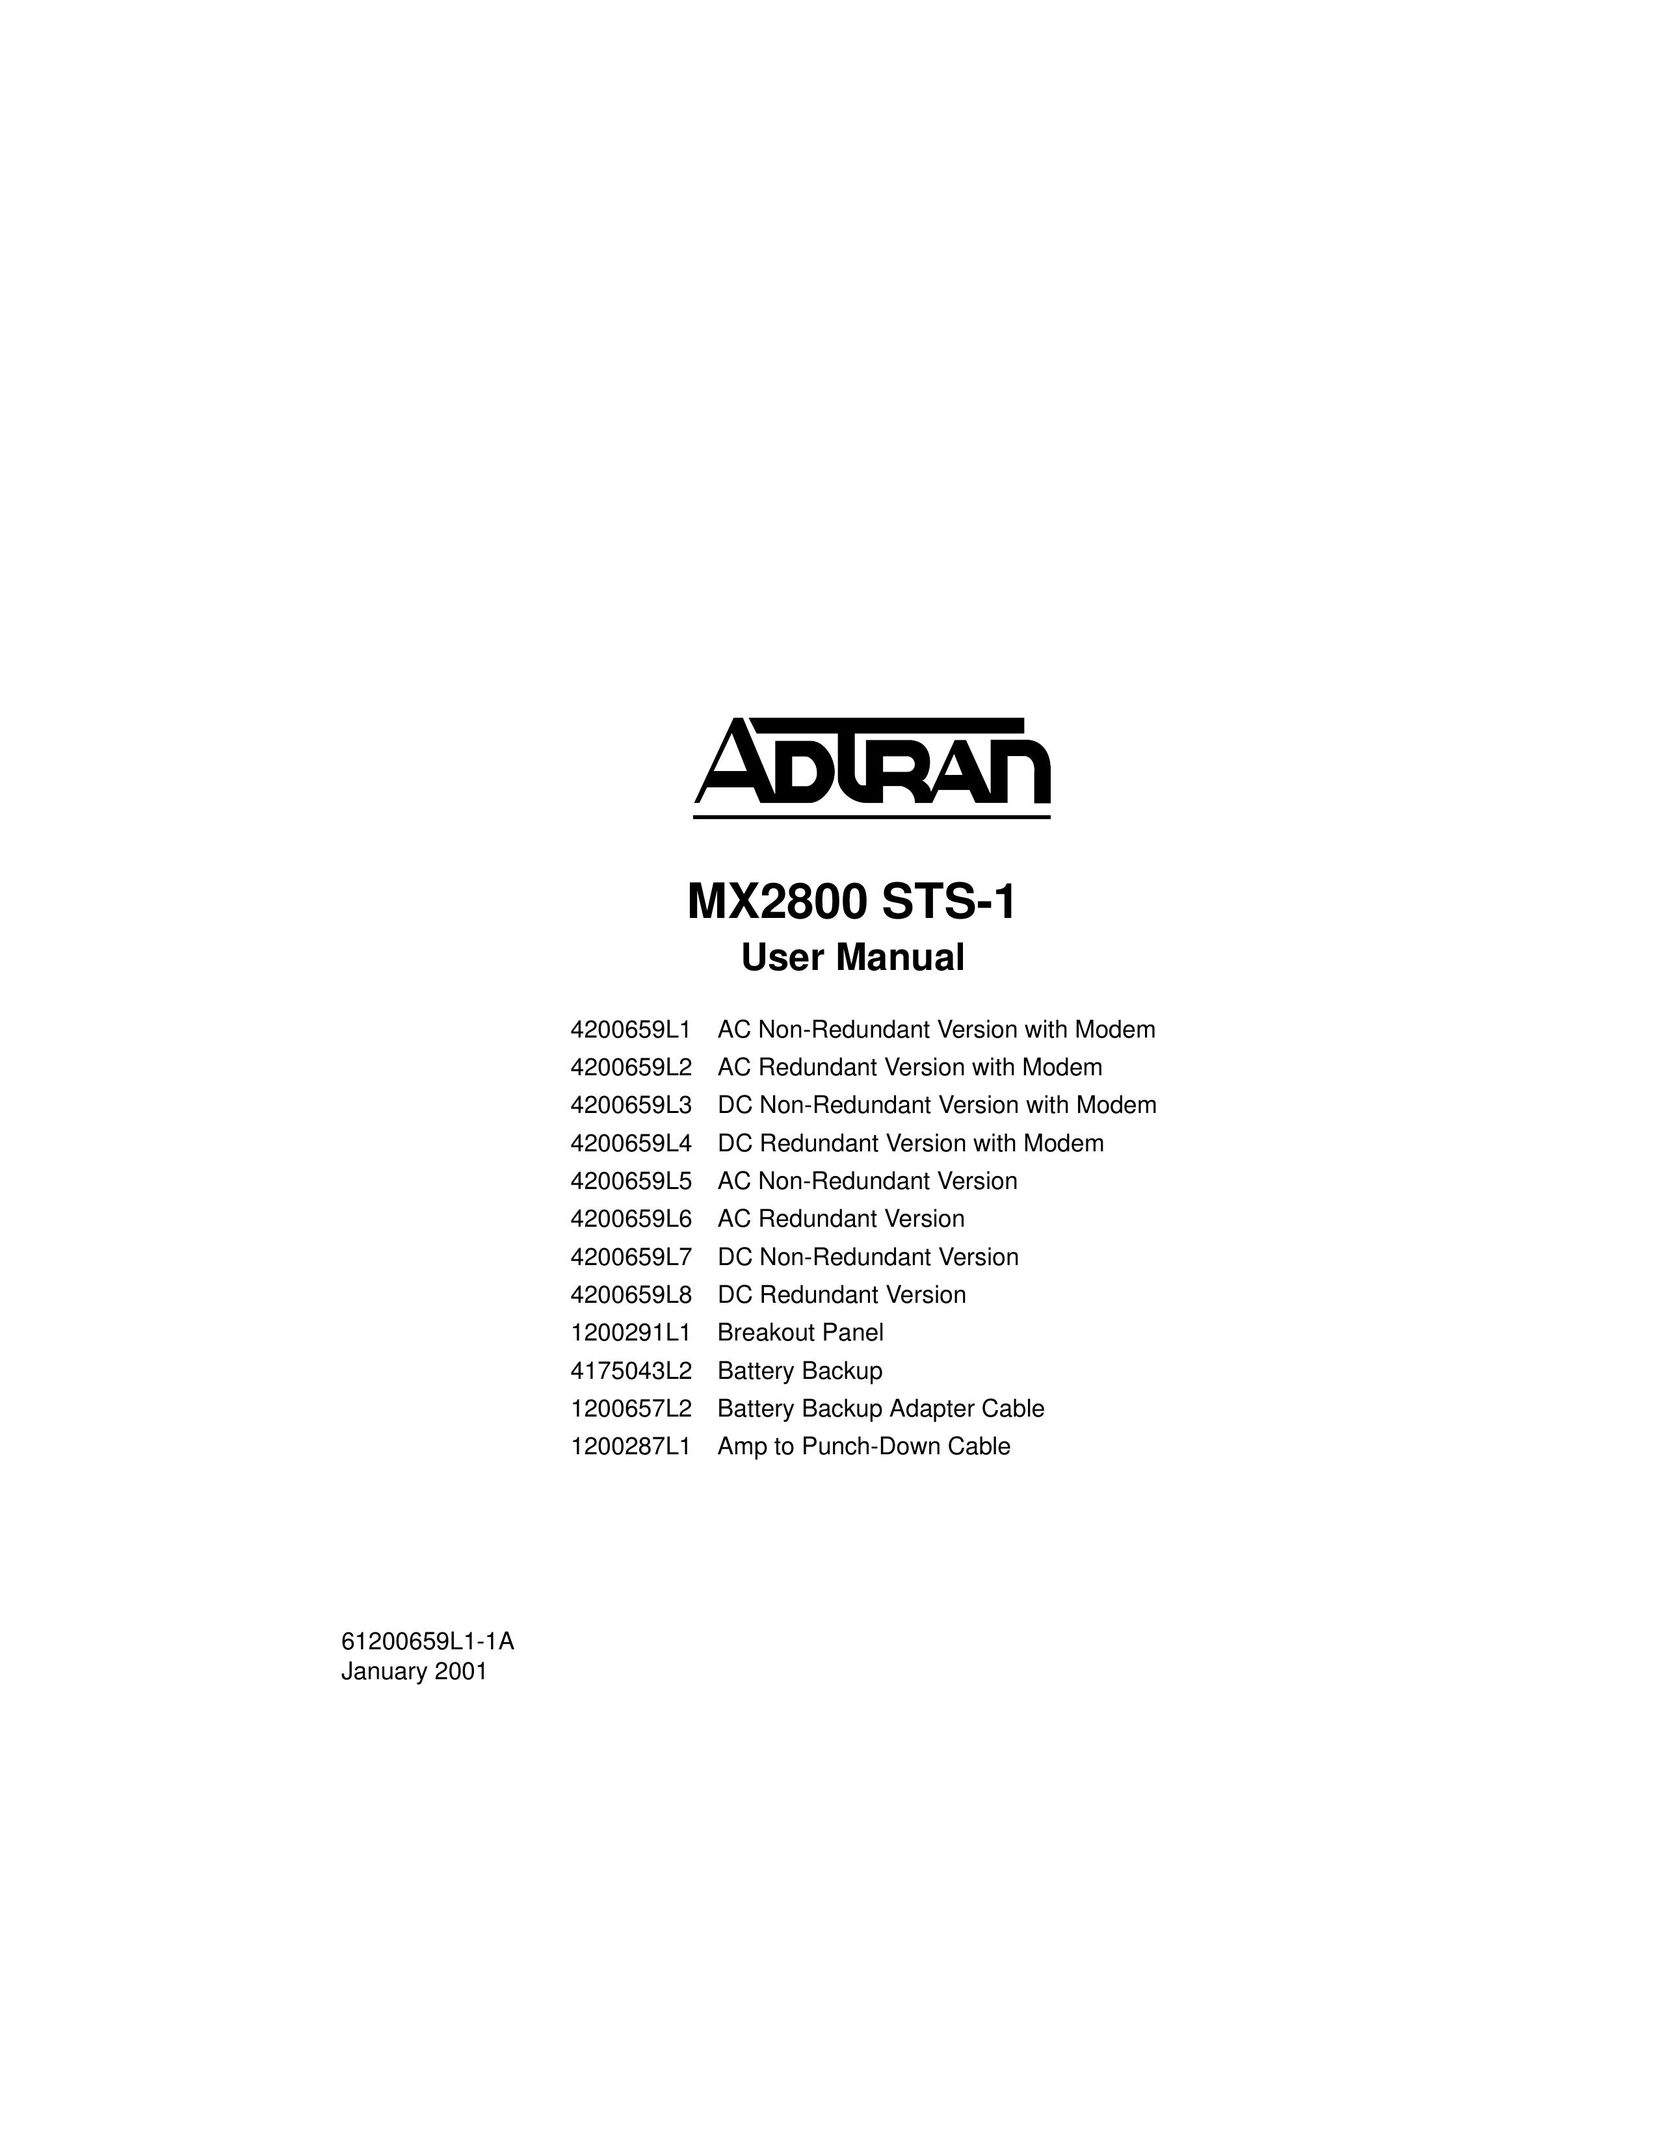 ADTRAN 4200659L2 Switch User Manual